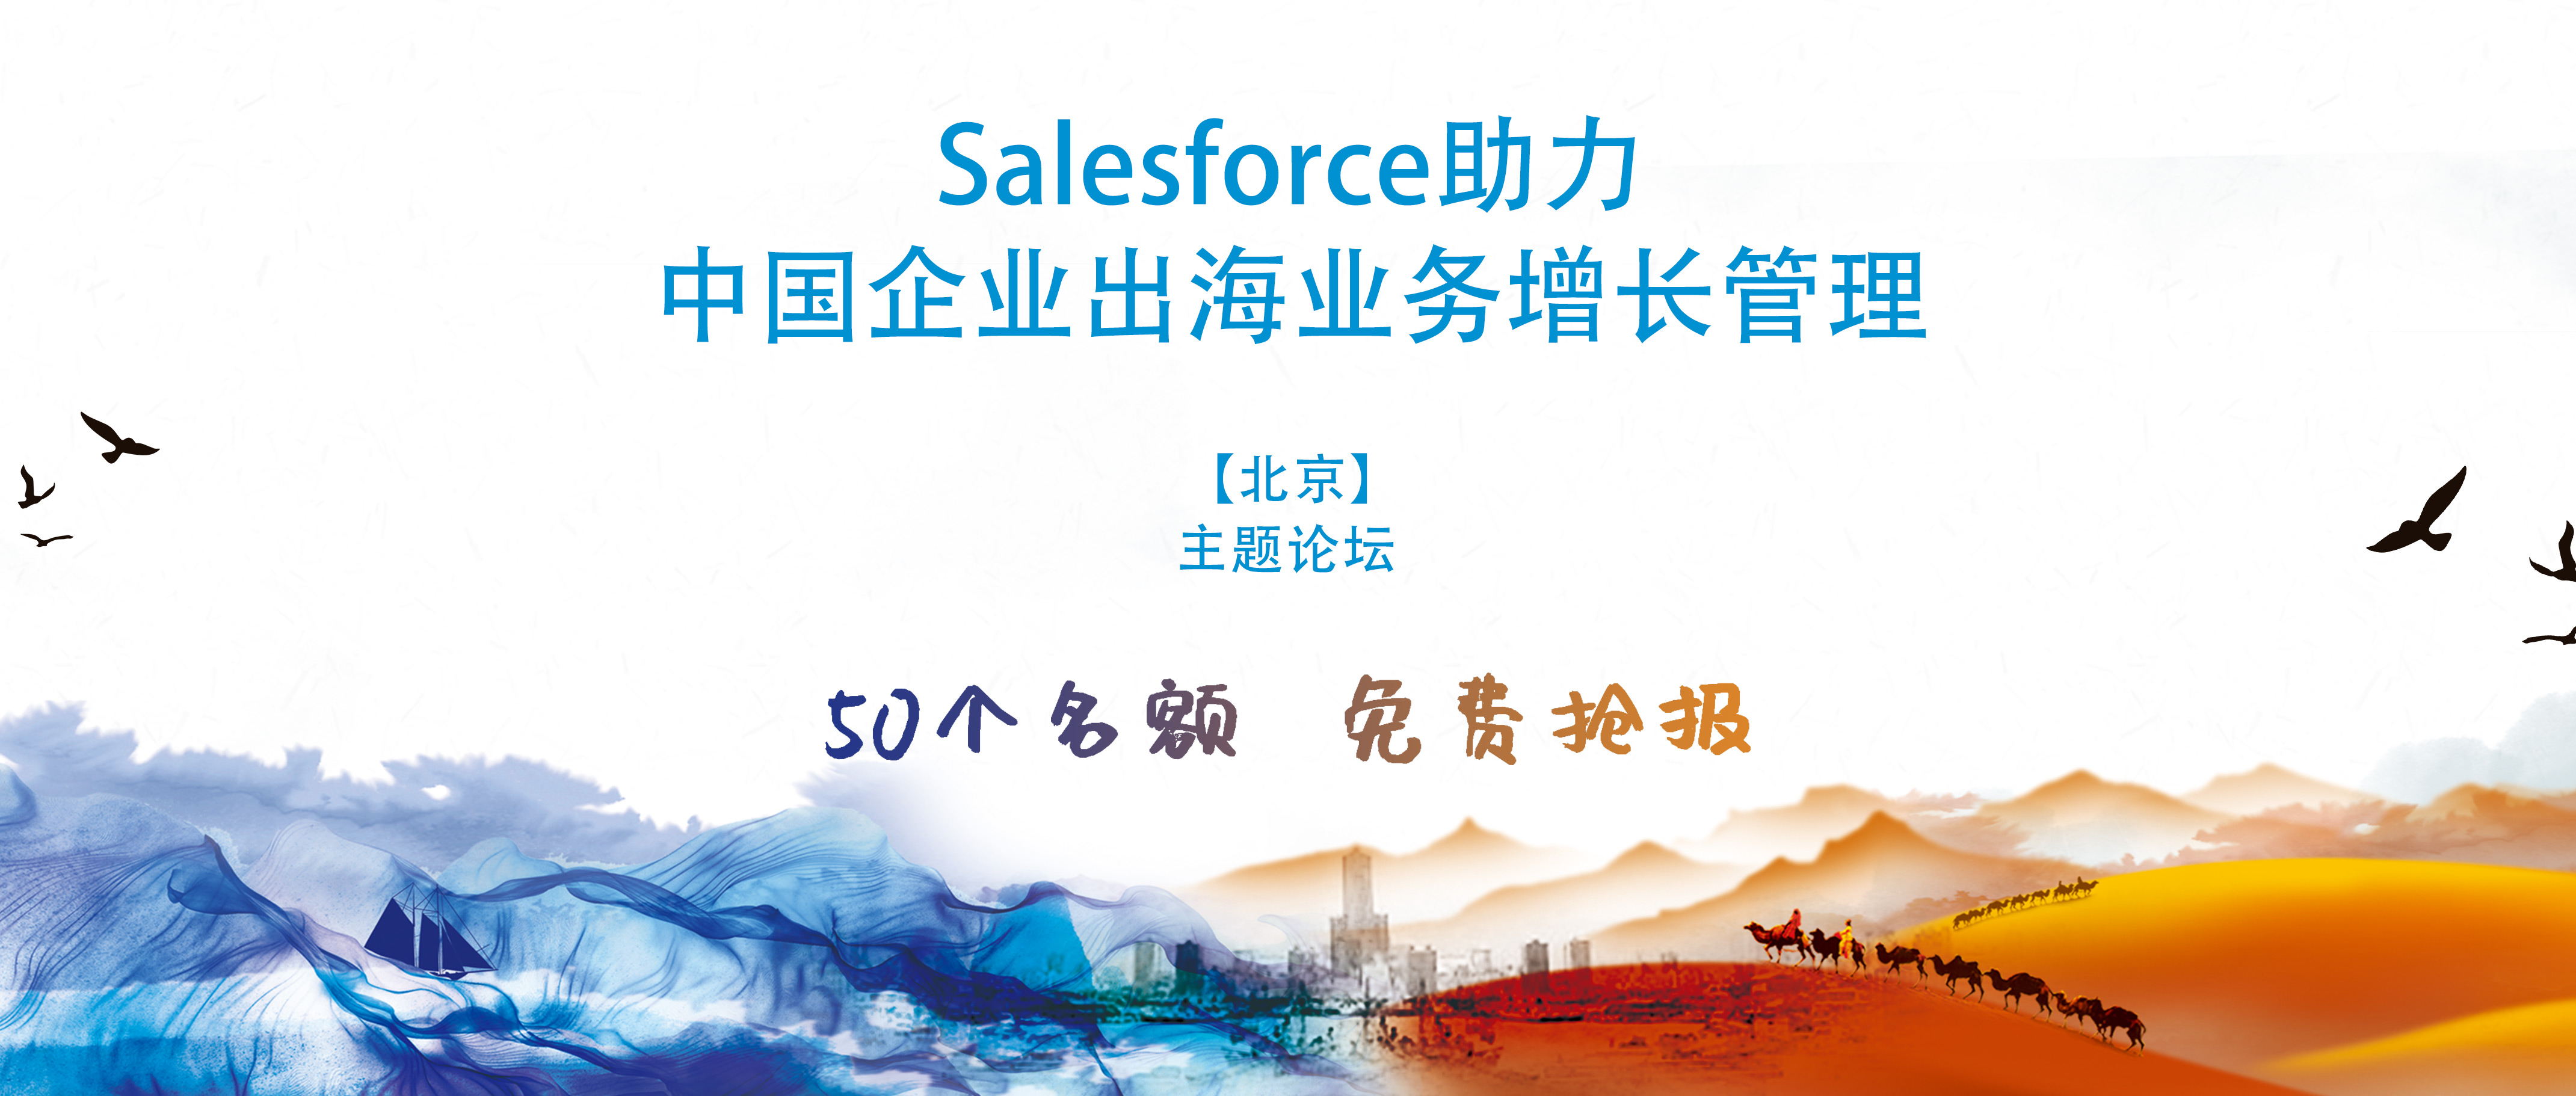 50个免费名额 | Salesforce助力企业出海业务增长管理论坛